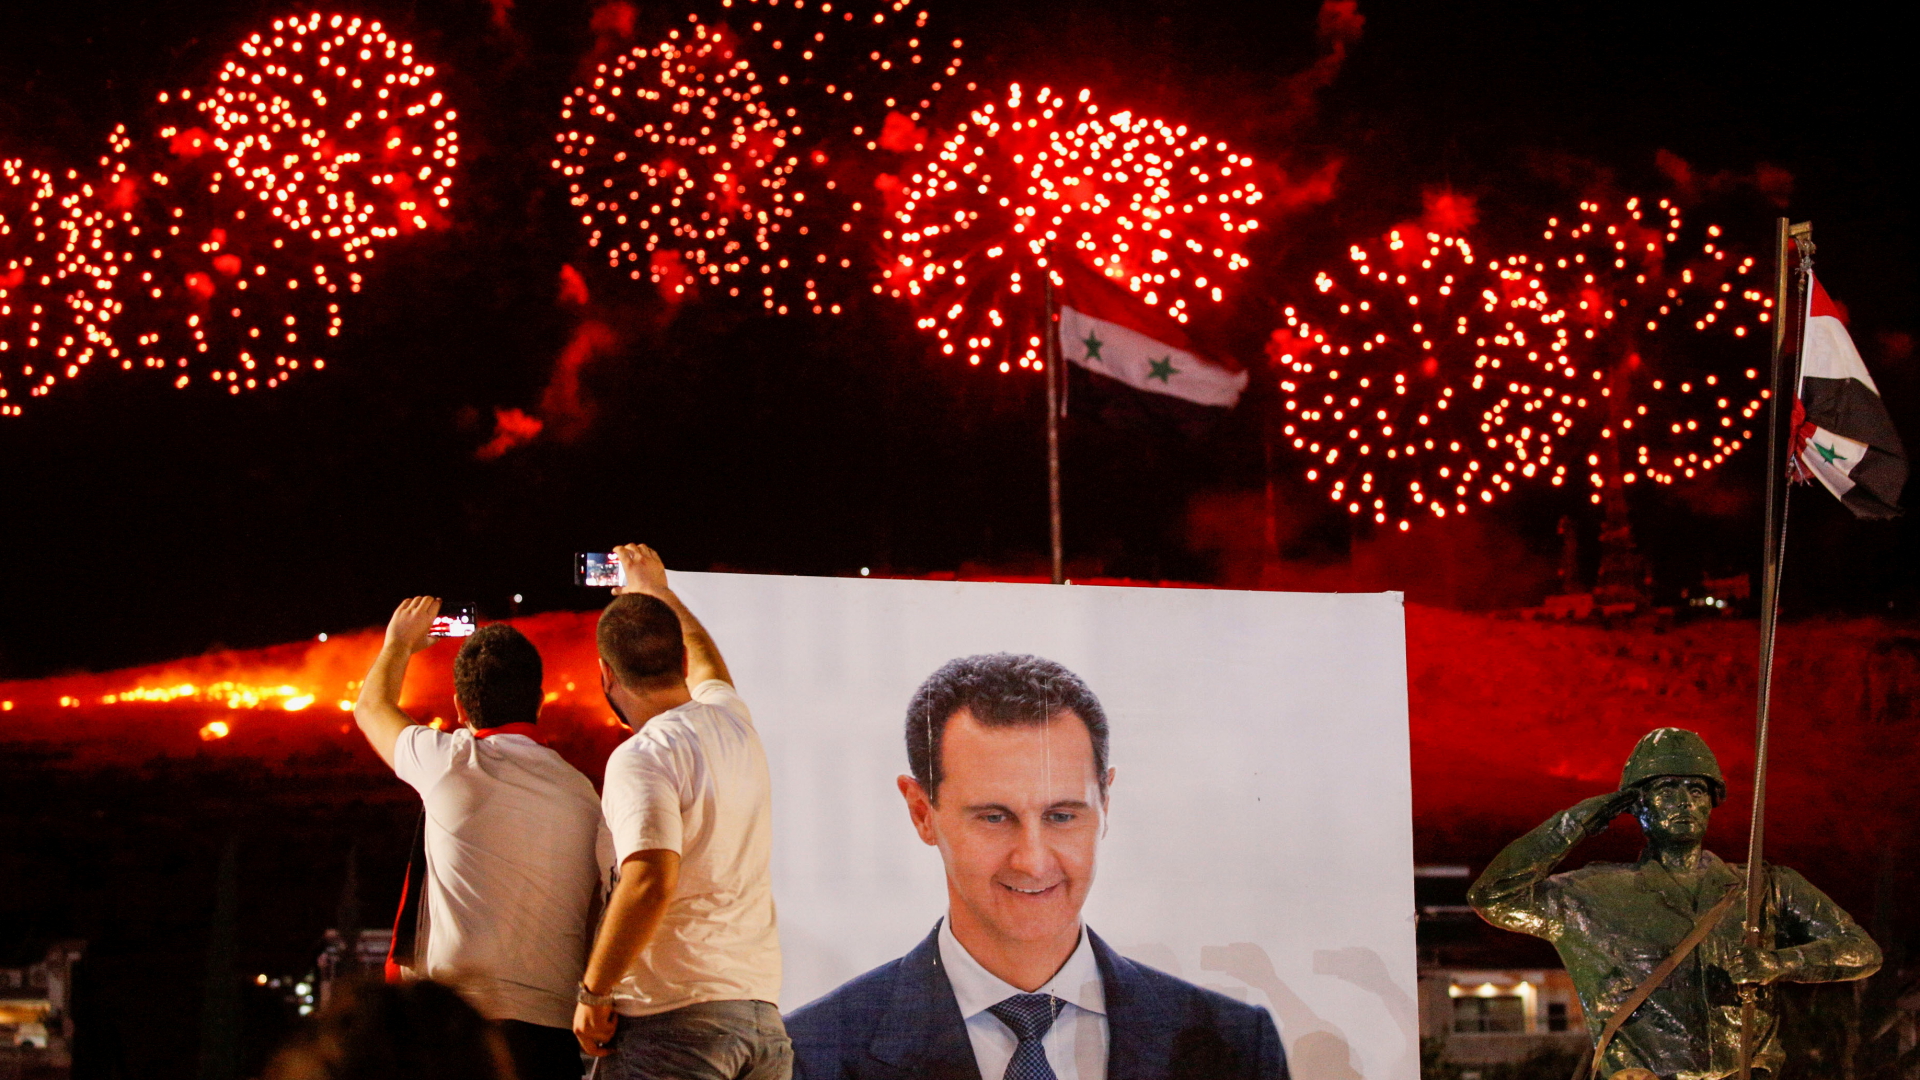 Anhänger des syrischen Präsidenten Assad schauen sich ein Feuerwerk vor einem Plakat mit Assads Konterfei an. | REUTERS